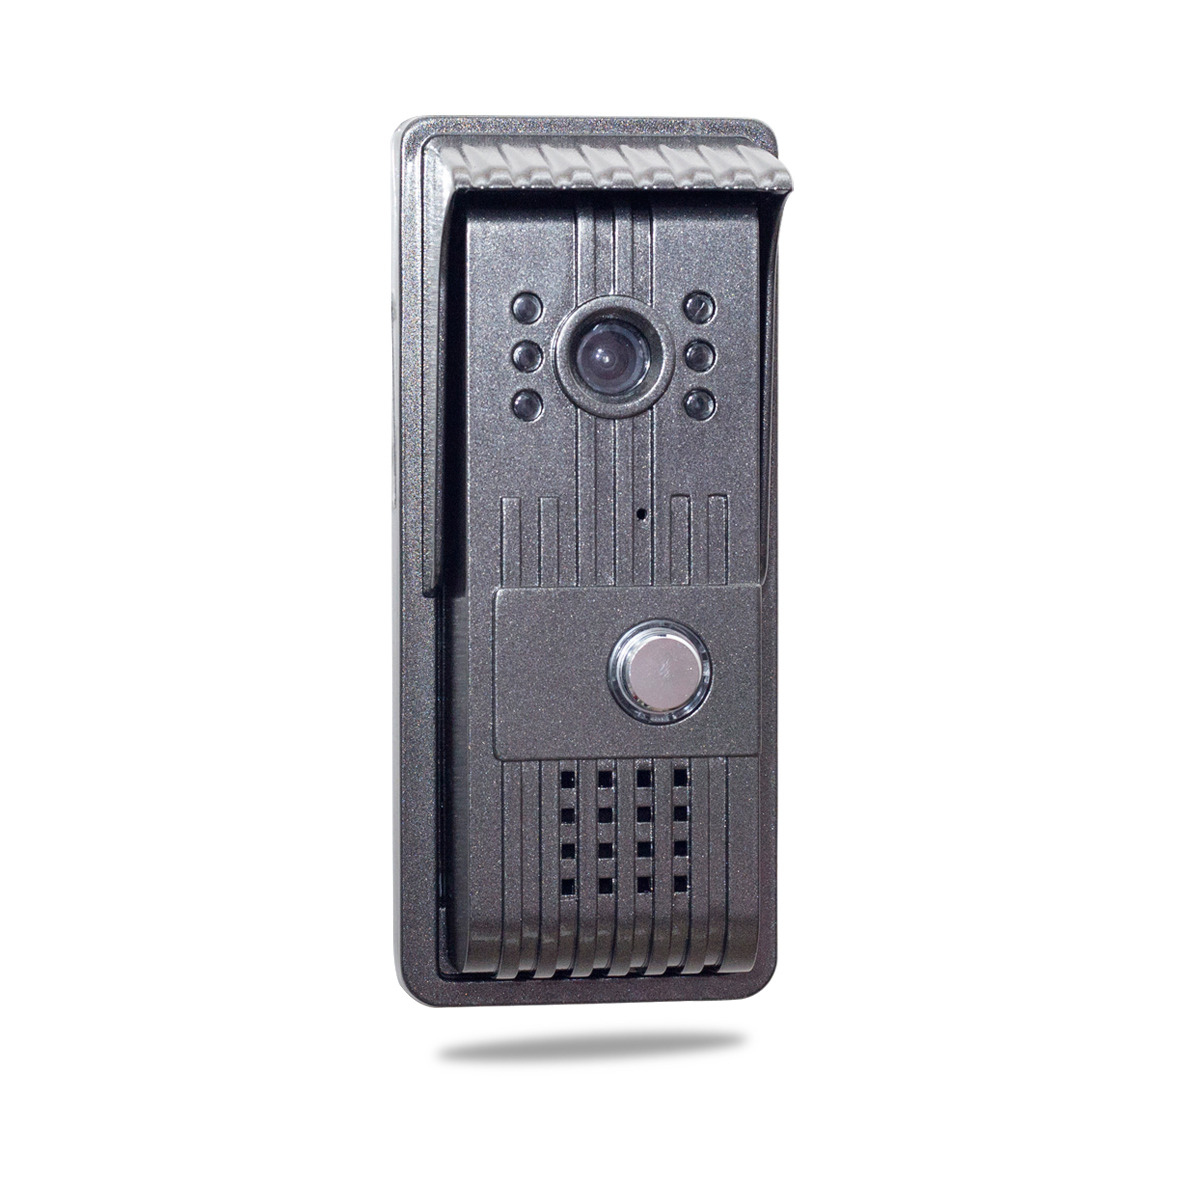 AlyBell wifi doorbell with wireless dingdong bell, video door phone intercom door ring support ios/android smart phone/tablet